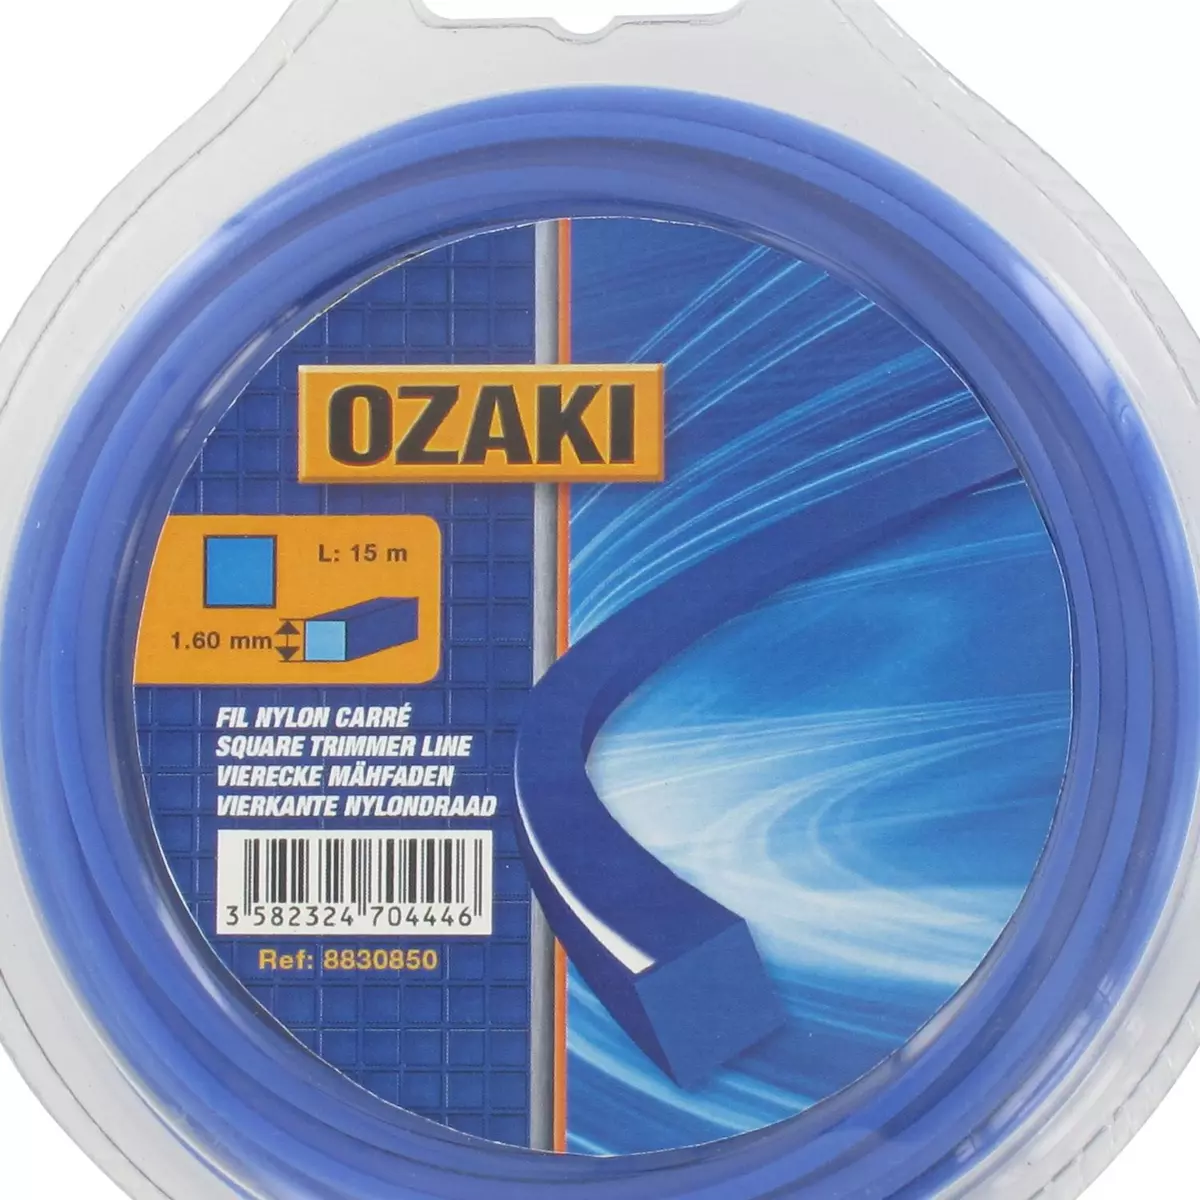 OZAKI Fil nylon carré - D3 mm